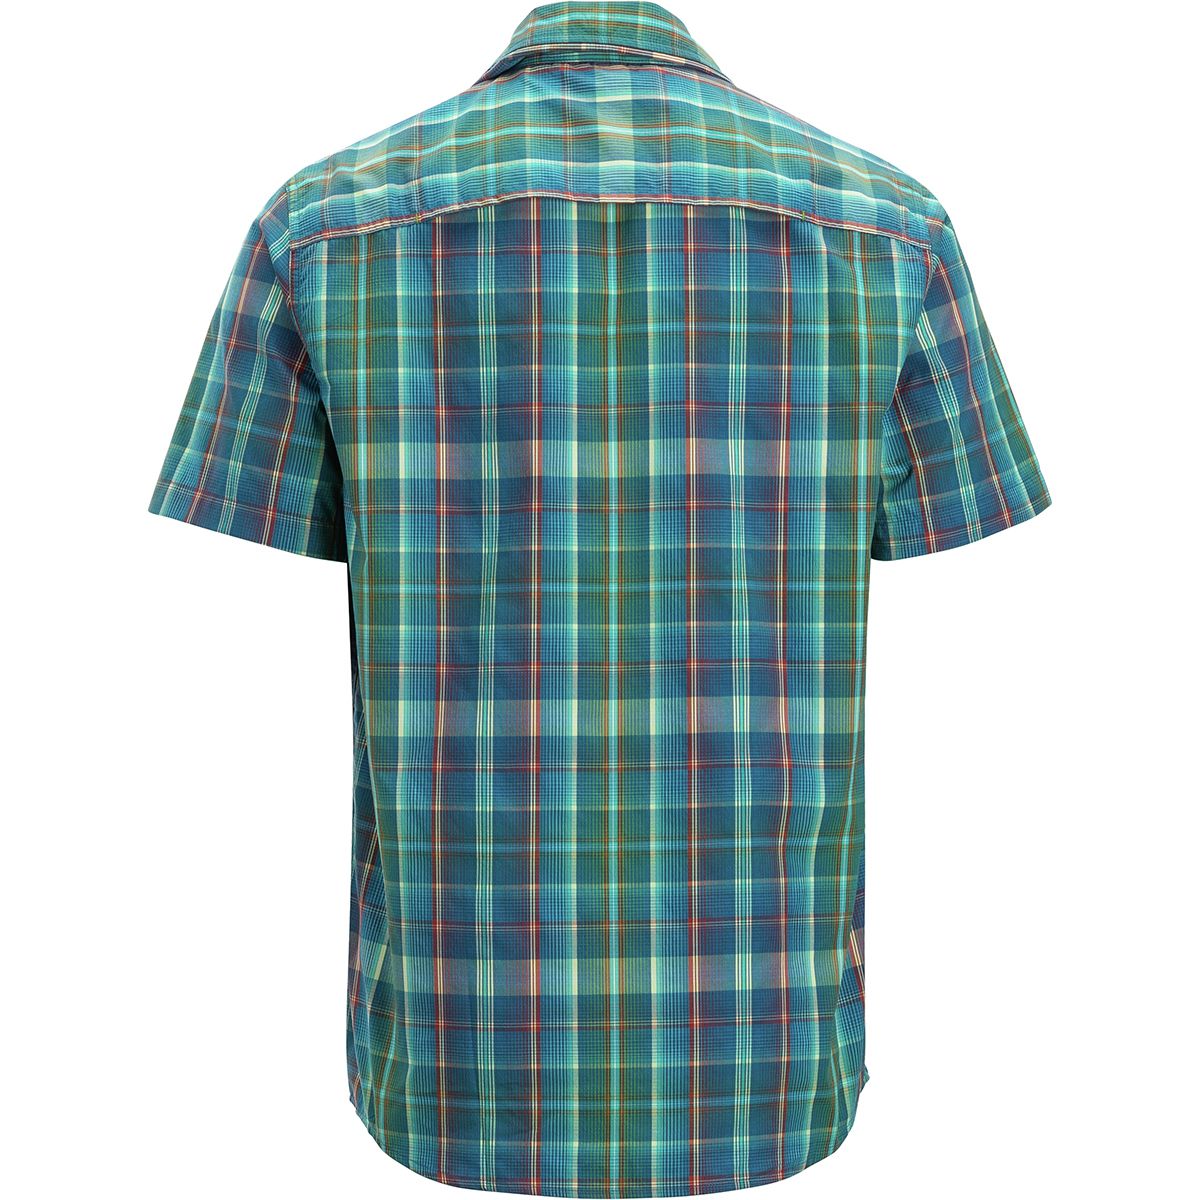 ExOfficio Estacado Short-Sleeve Shirt - Men's | Backcountry.com